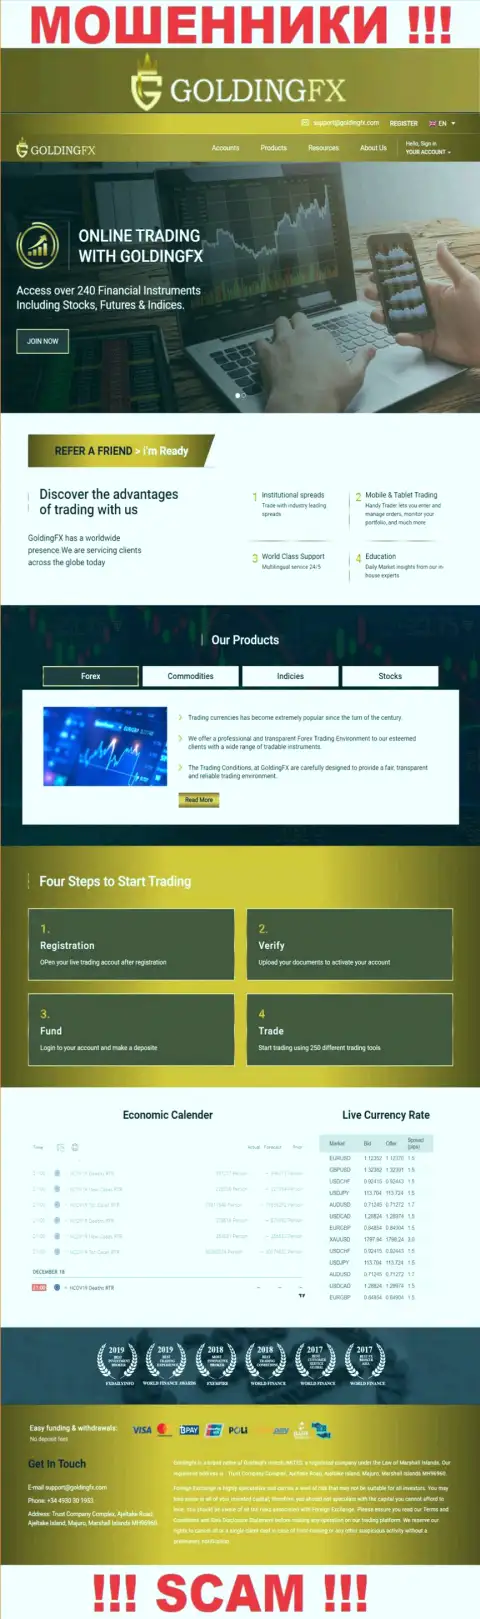 Официальный web-сайт шулеров Golding FX, заполненный инфой для доверчивых людей